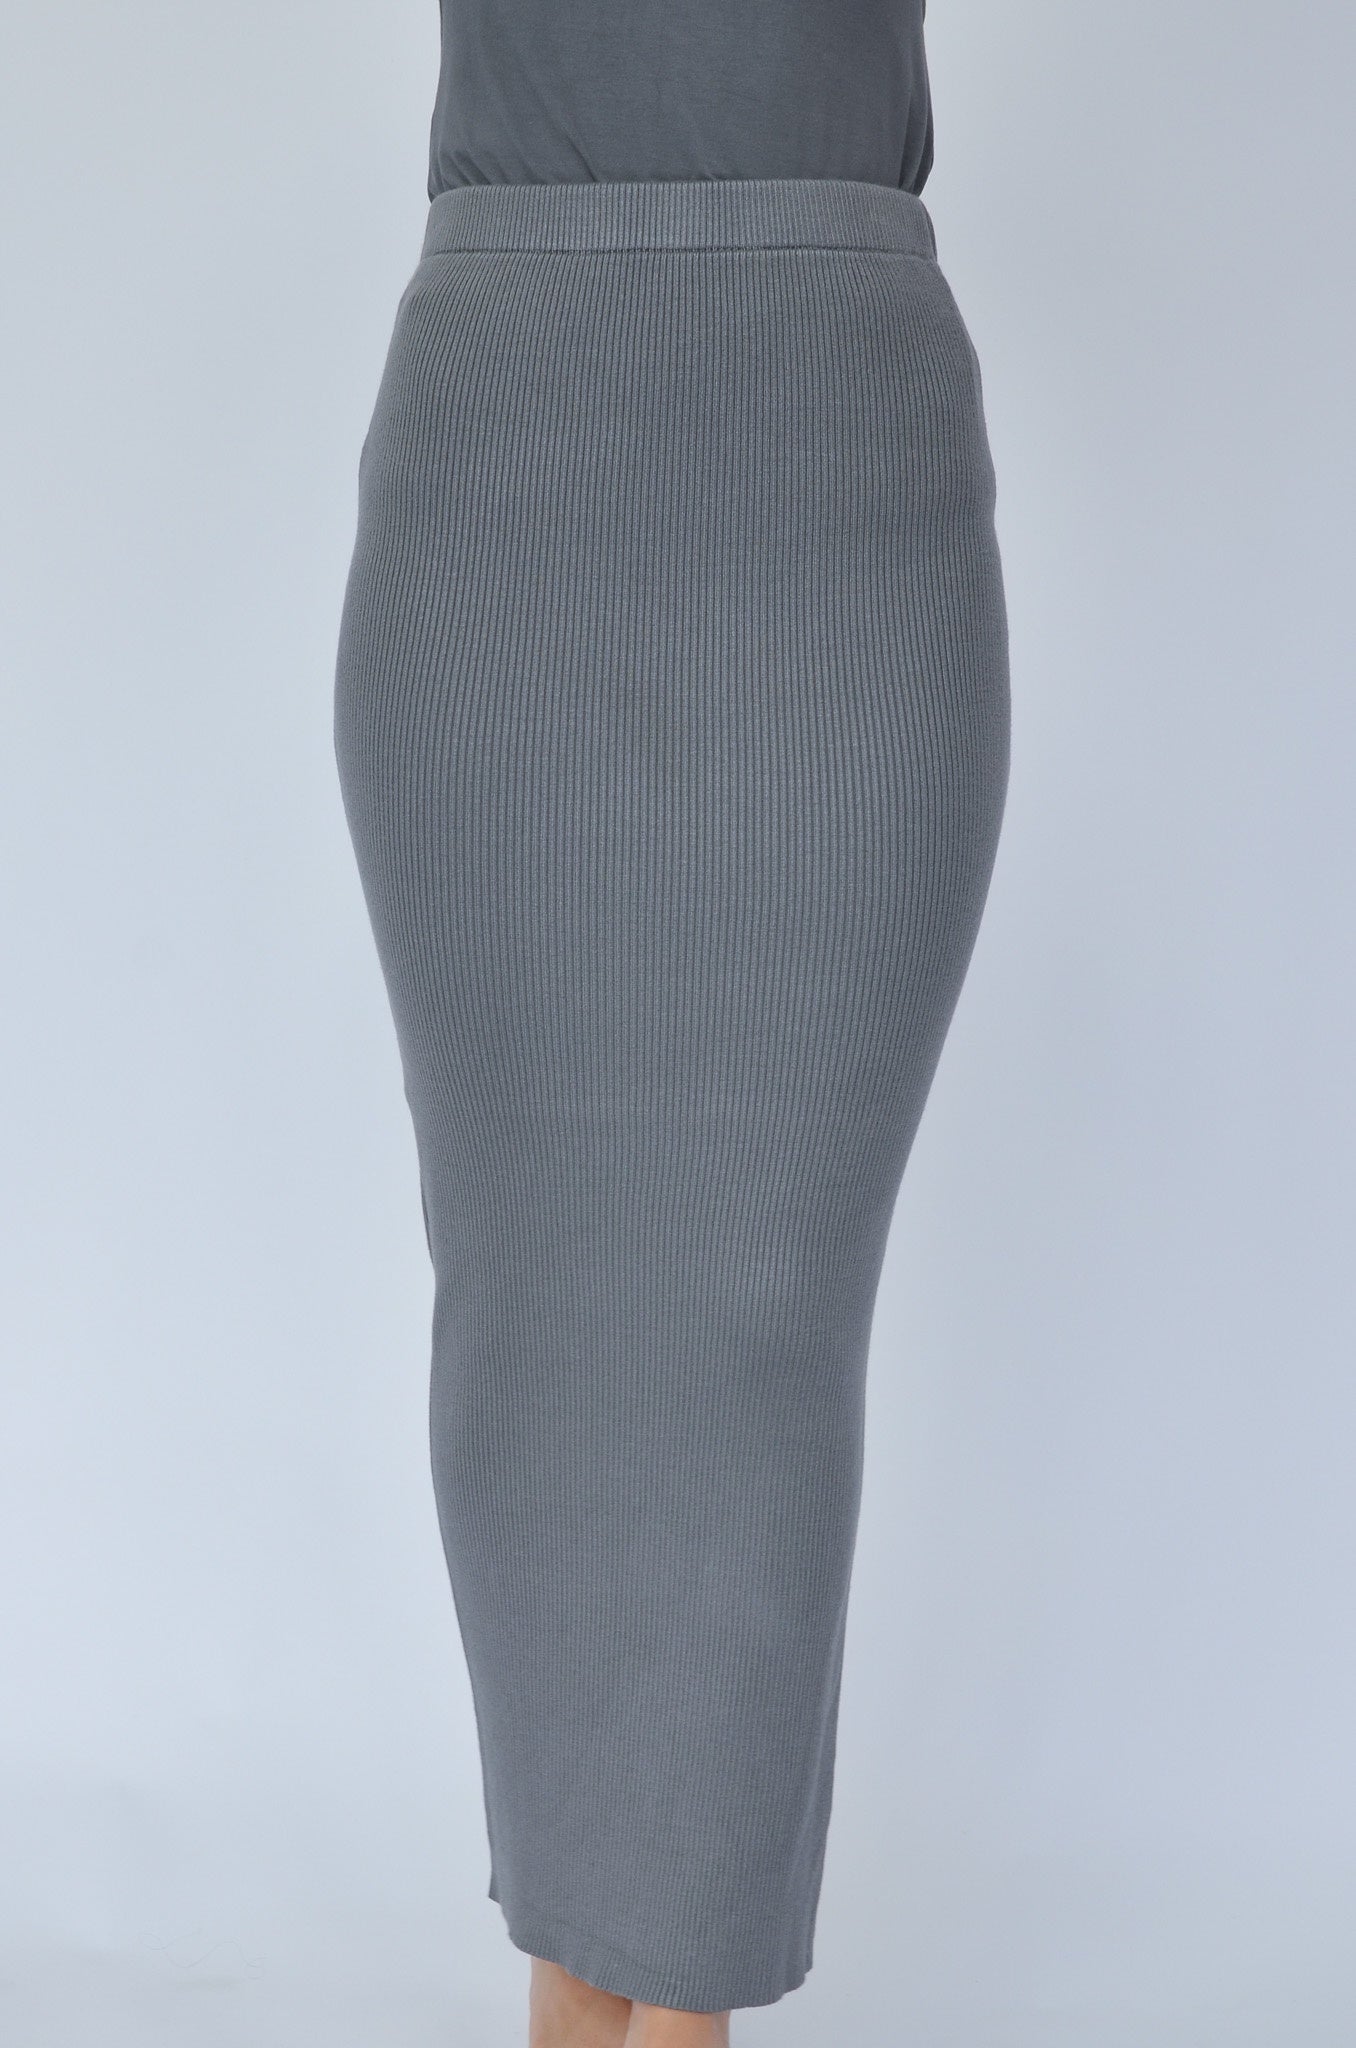 Ribbed Skirt - Charcoal - Nasiba